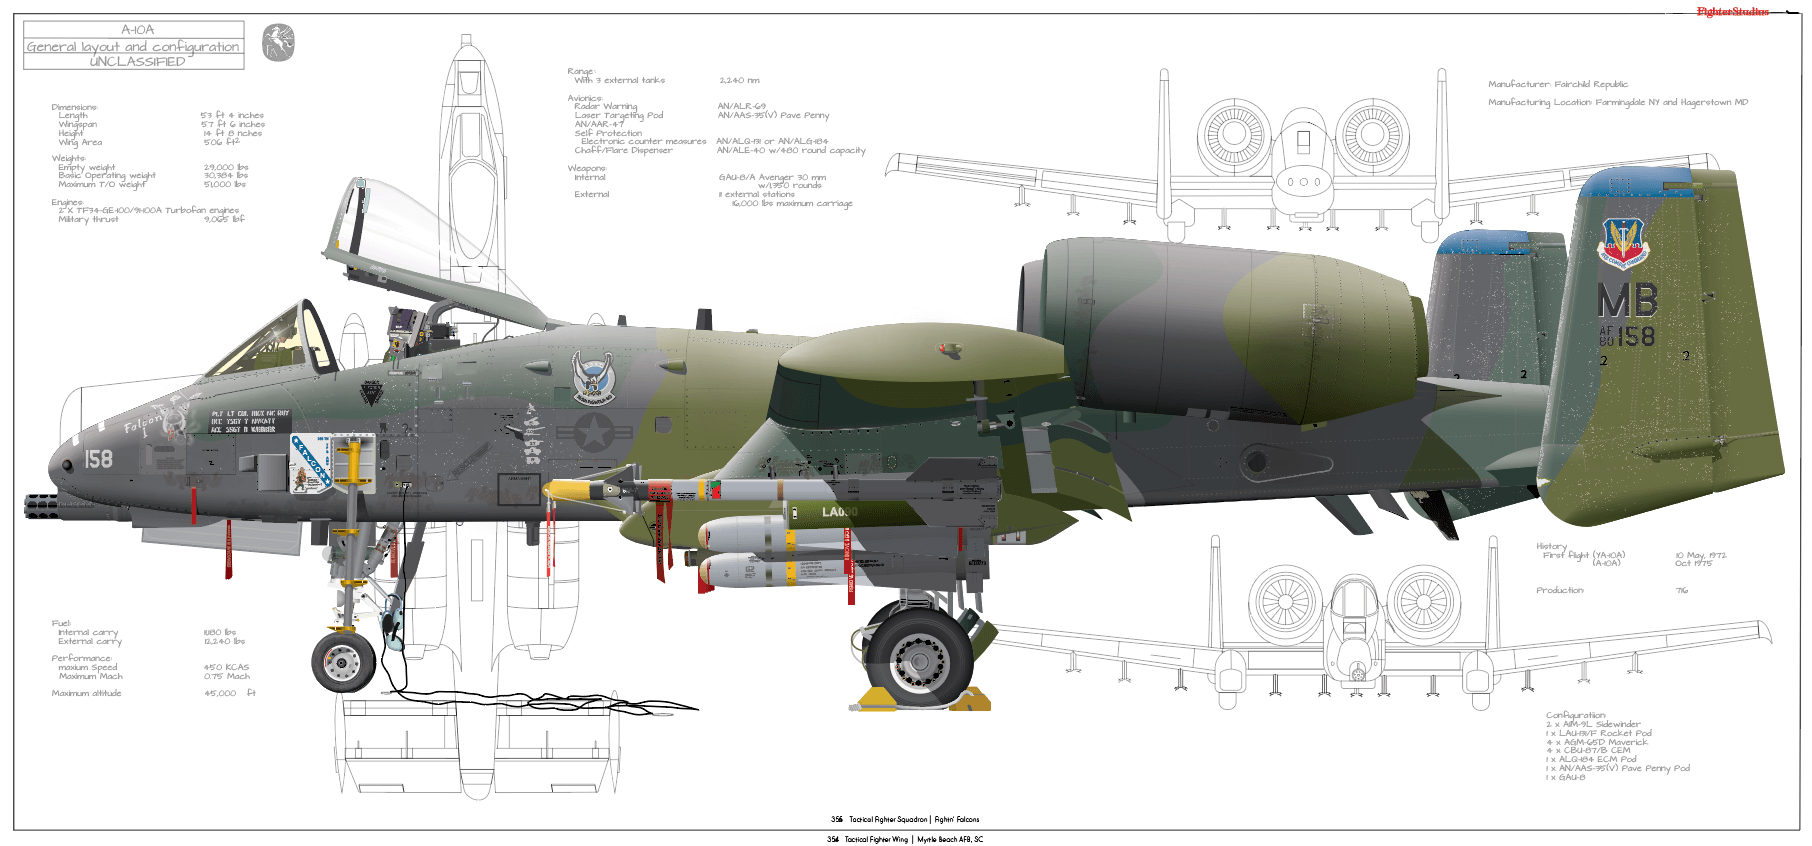 A 10 c 10 решение. A-10 Thunderbolt чертеж. A-10 Thunderbolt II чертежи. A10 Thunderbolt 2 чертеж. Fairchild Republic a-10 Thunderbolt II чертеж.